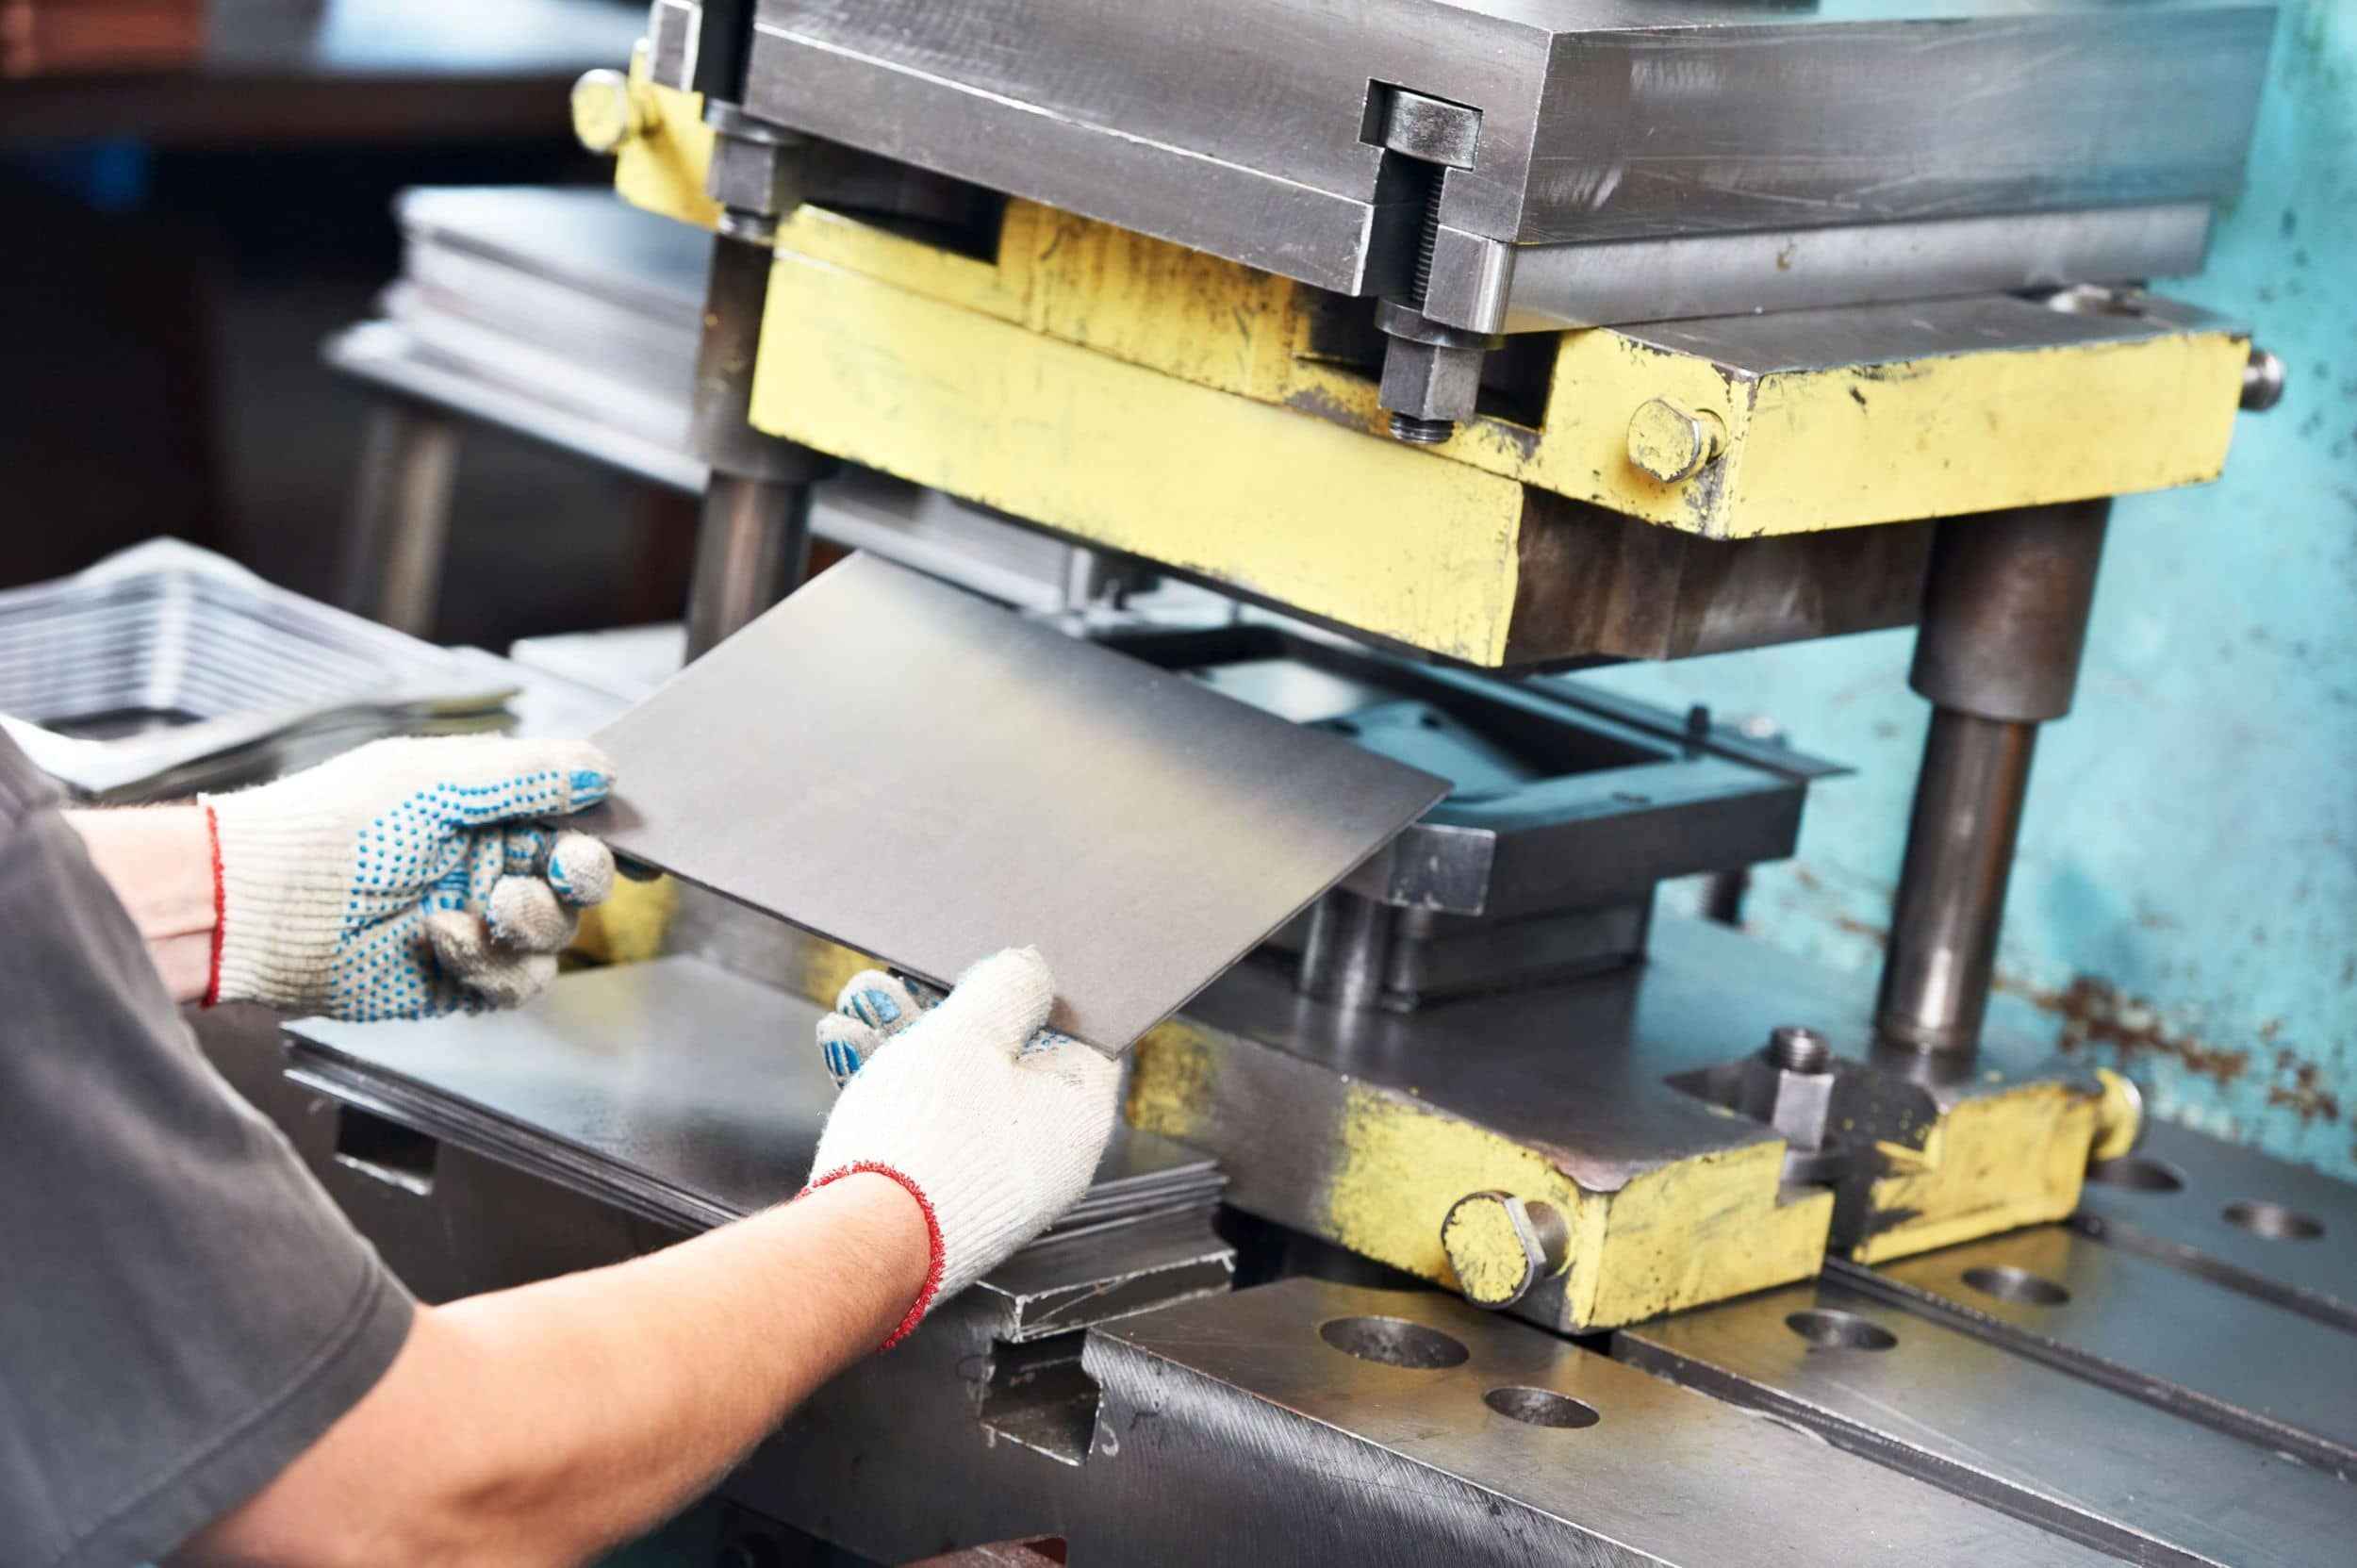 Fokusbranche Maschinenbau und Metallverarbeitung, Haftpflicht-Baustein: Ein Mitarbeitender schiebt eine Metallplatte in eine Stanzmaschine